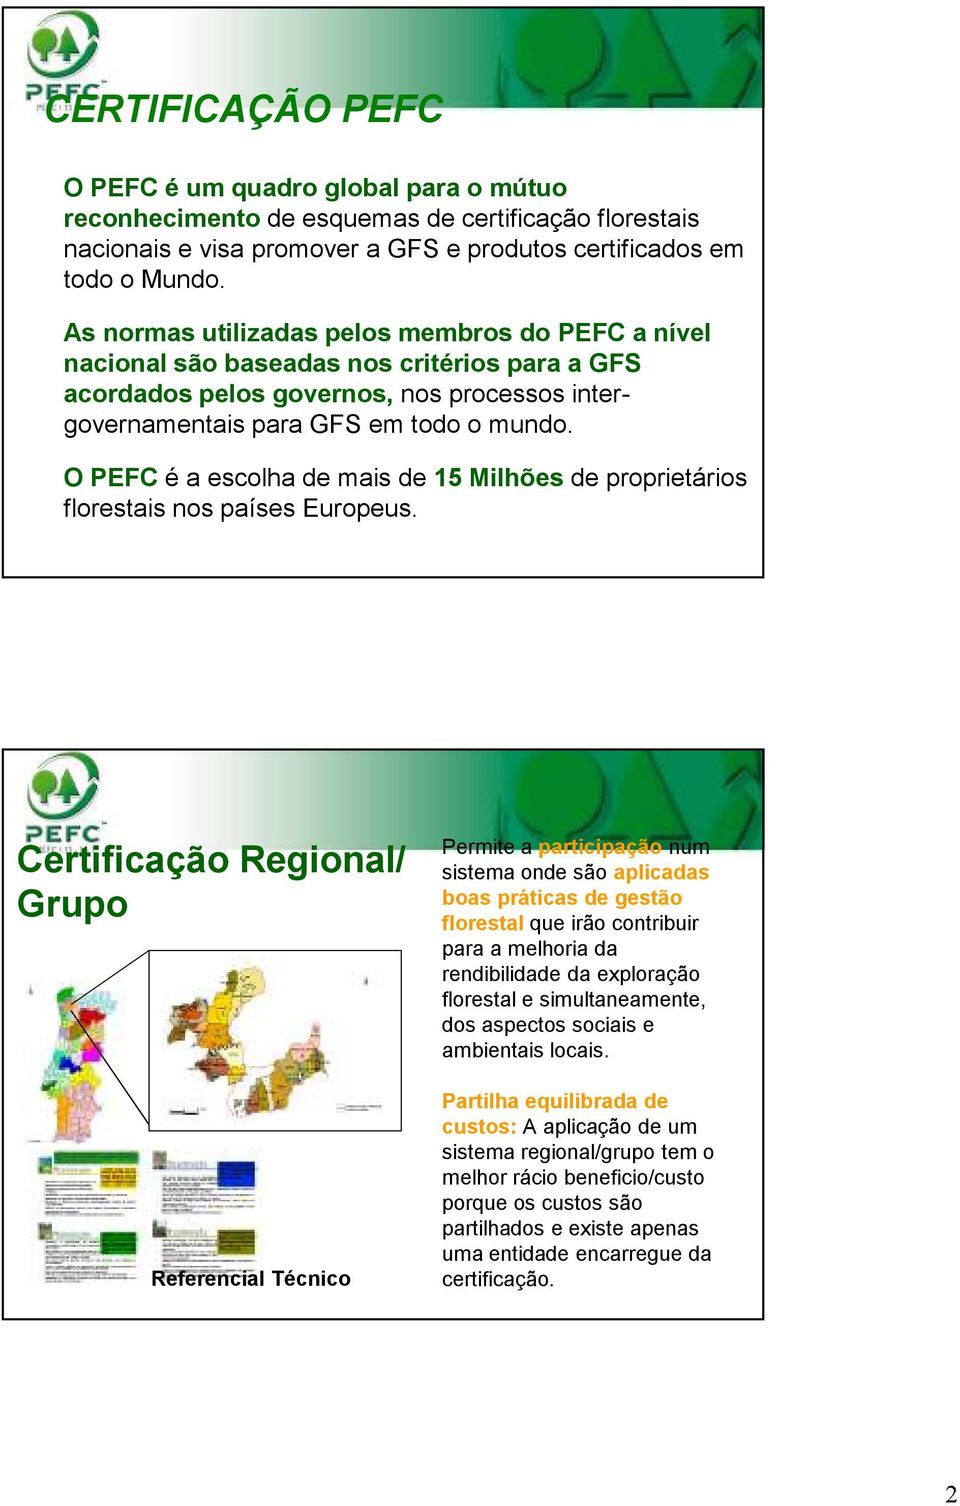 O PEFC é a escolha de mais de 15 Milhões de proprietários florestais nos países Europeus.